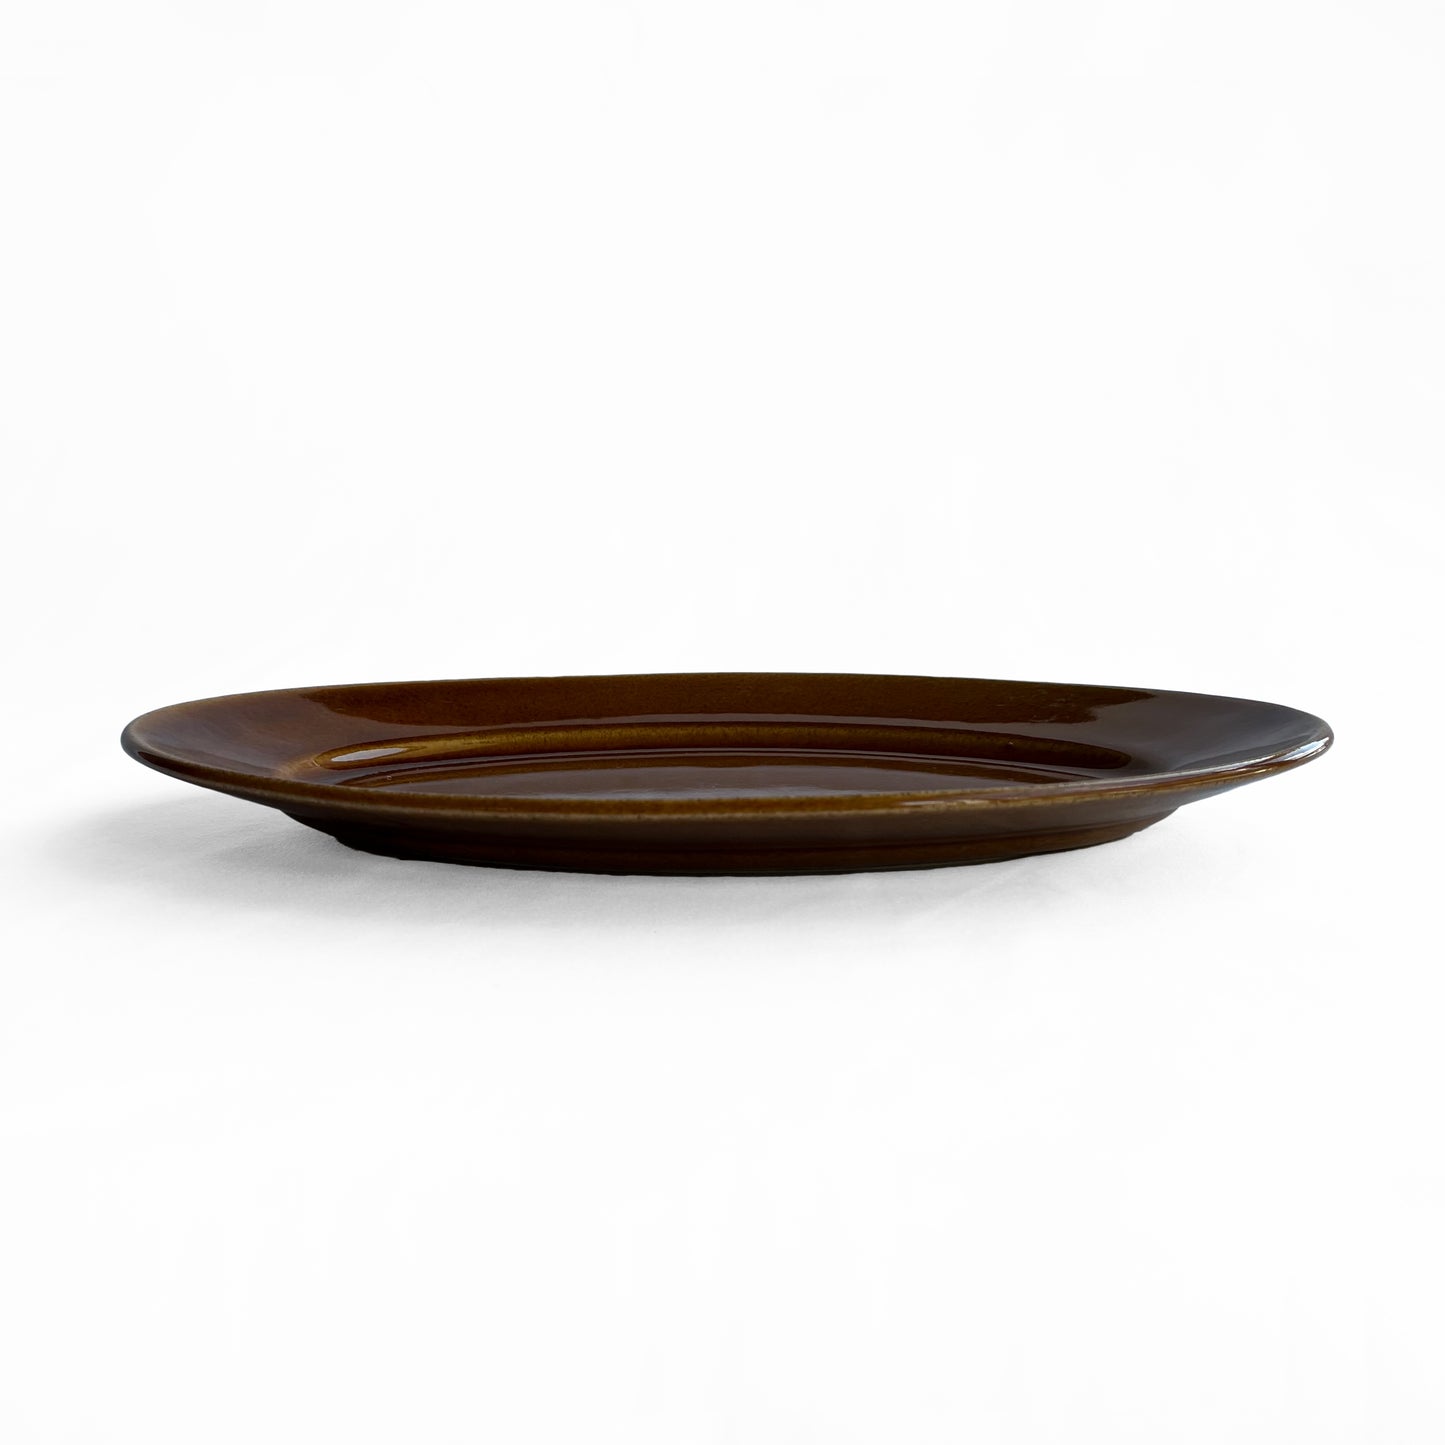 Gunji3 Brown glazed oval dish L